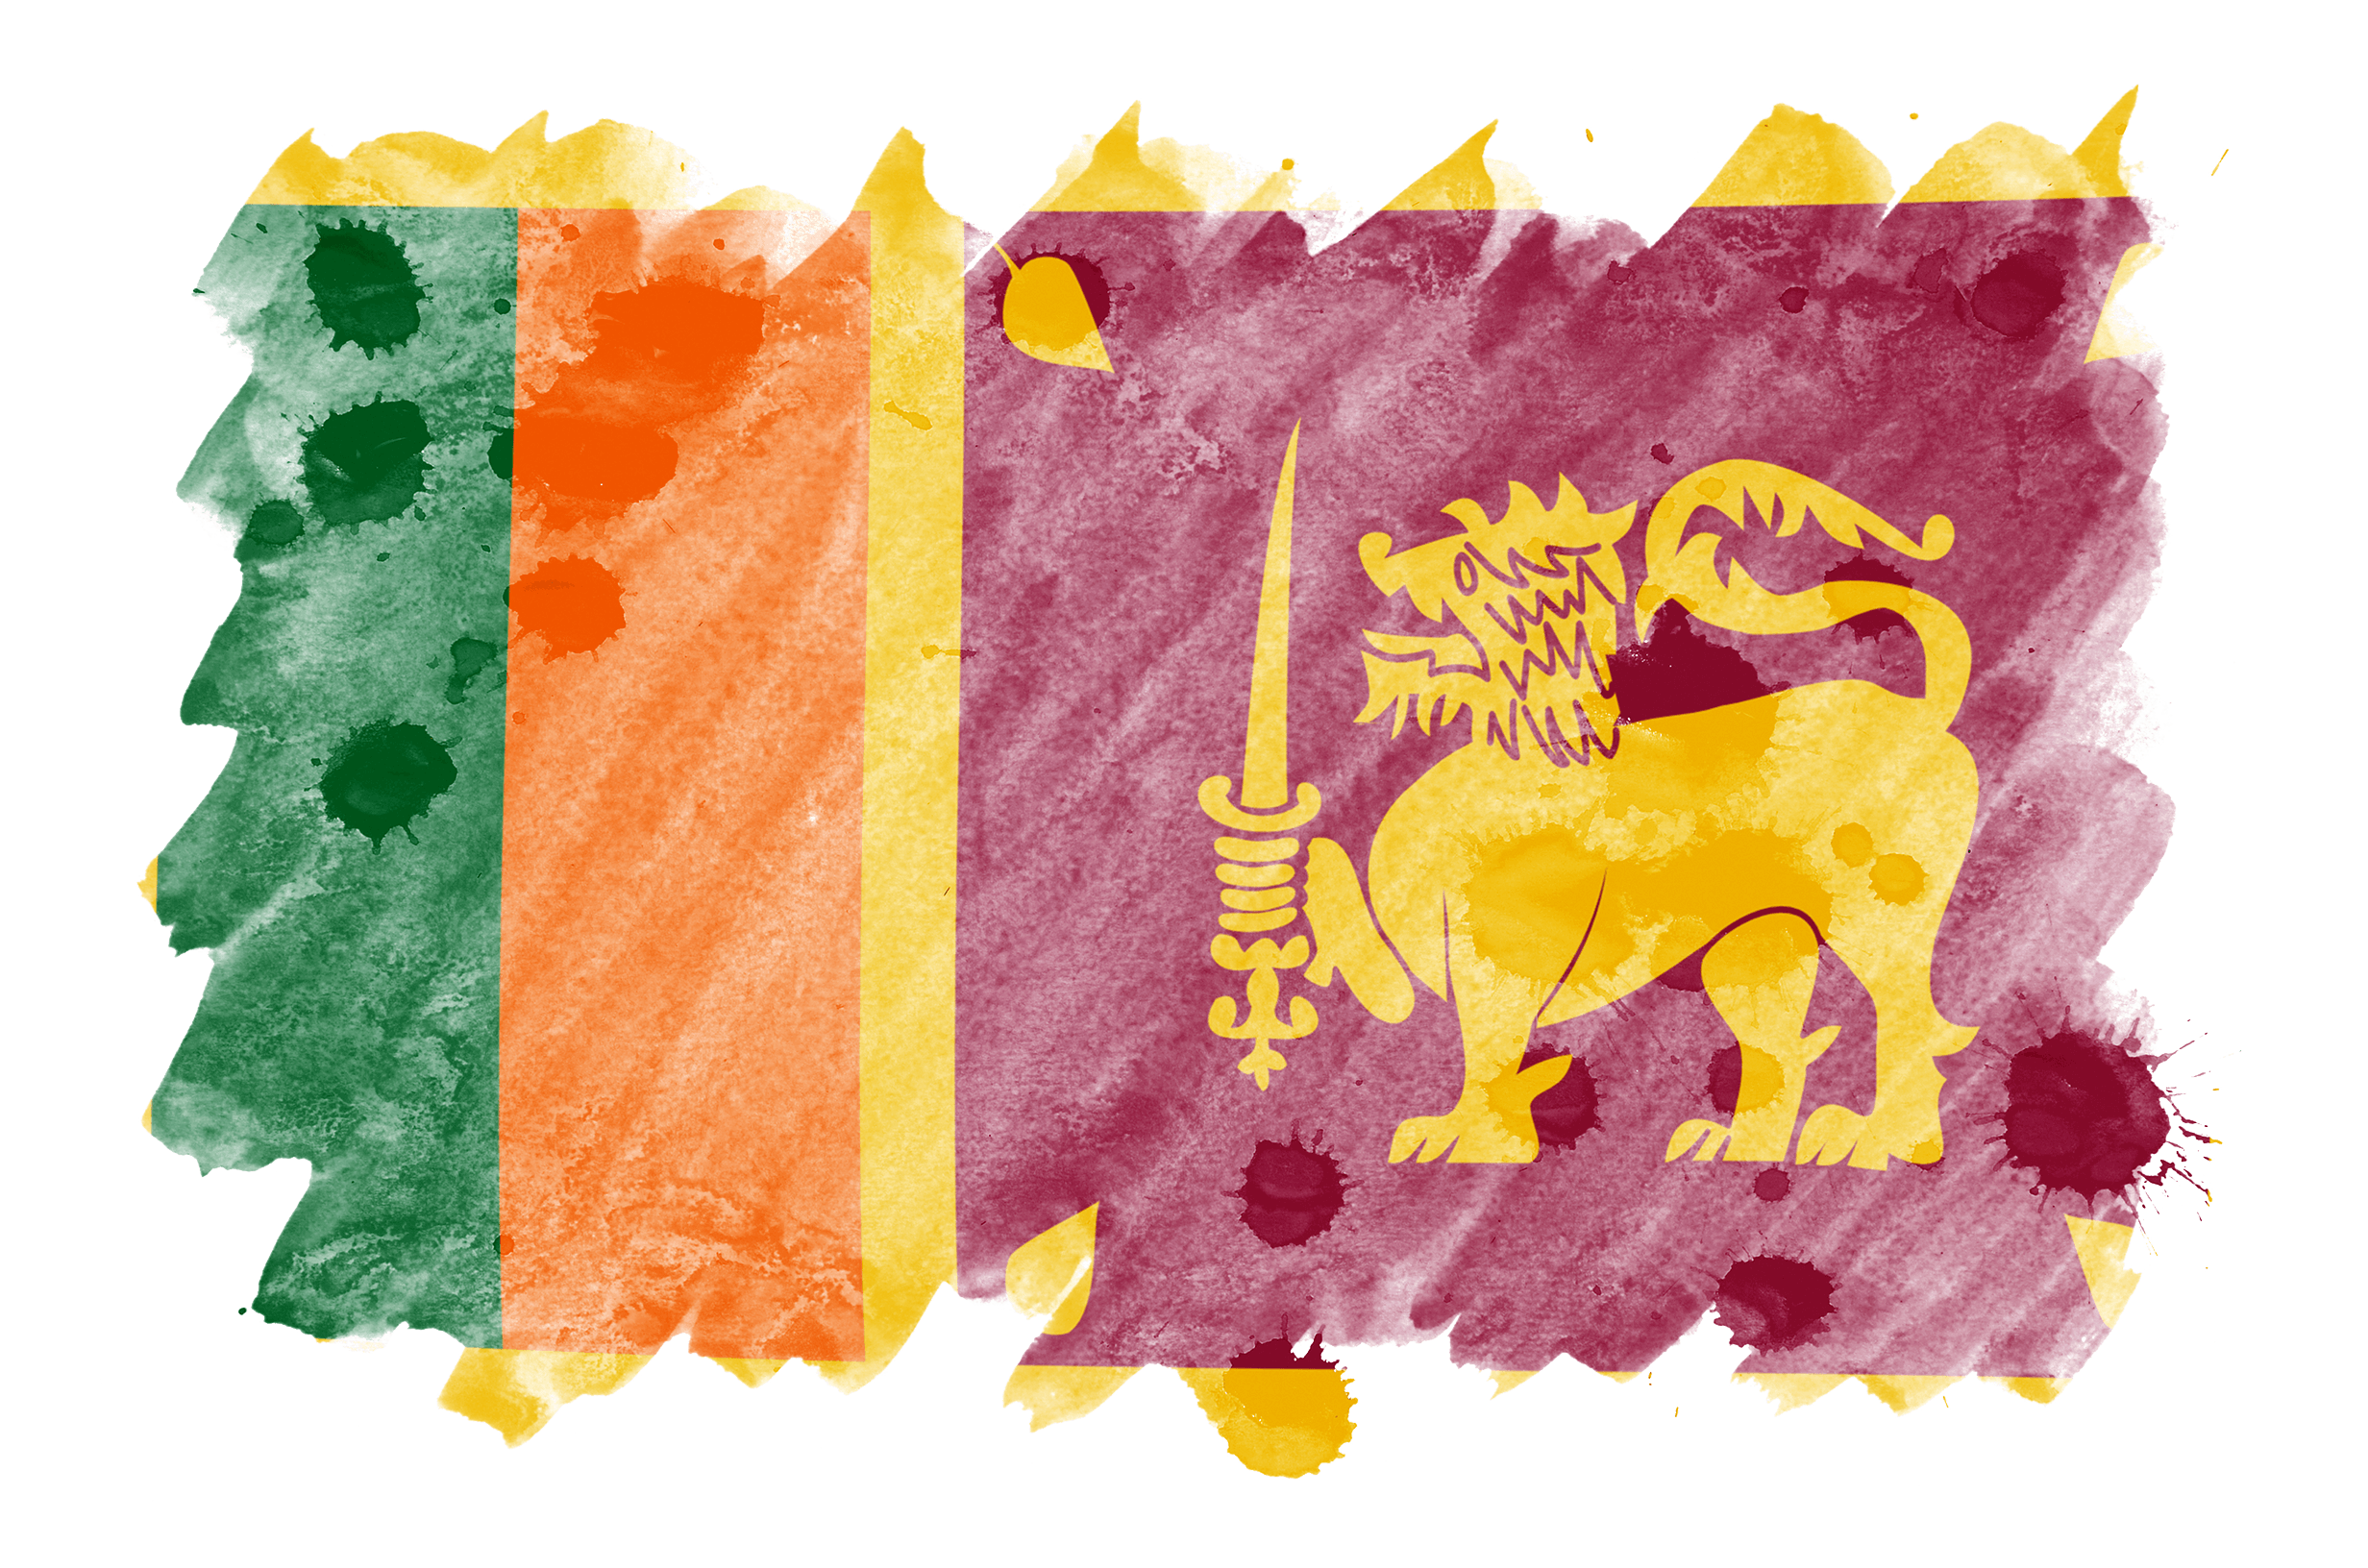 Флаг Шри-Ланки изображен в стиле жидкой акварели.